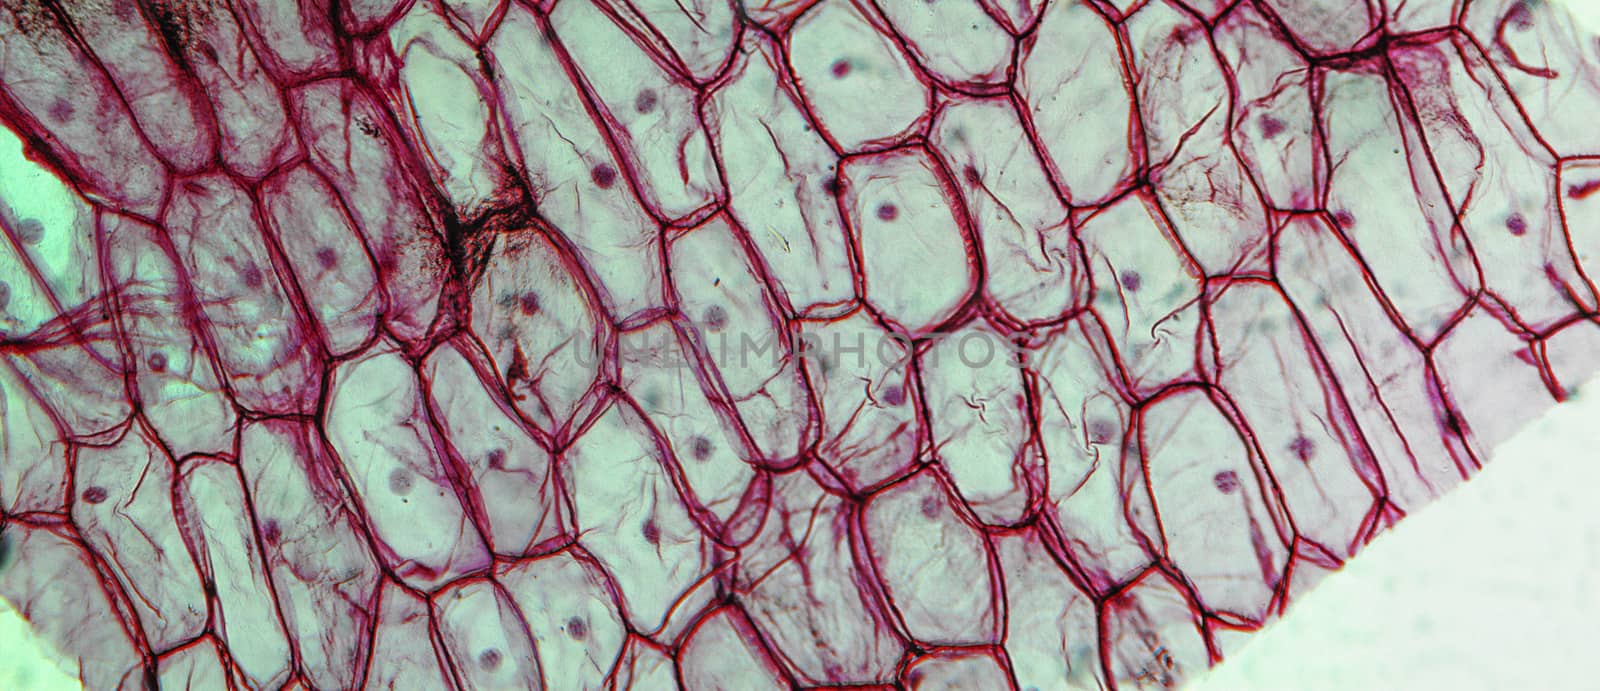 Onion epidermus micrograph by claudiodivizia